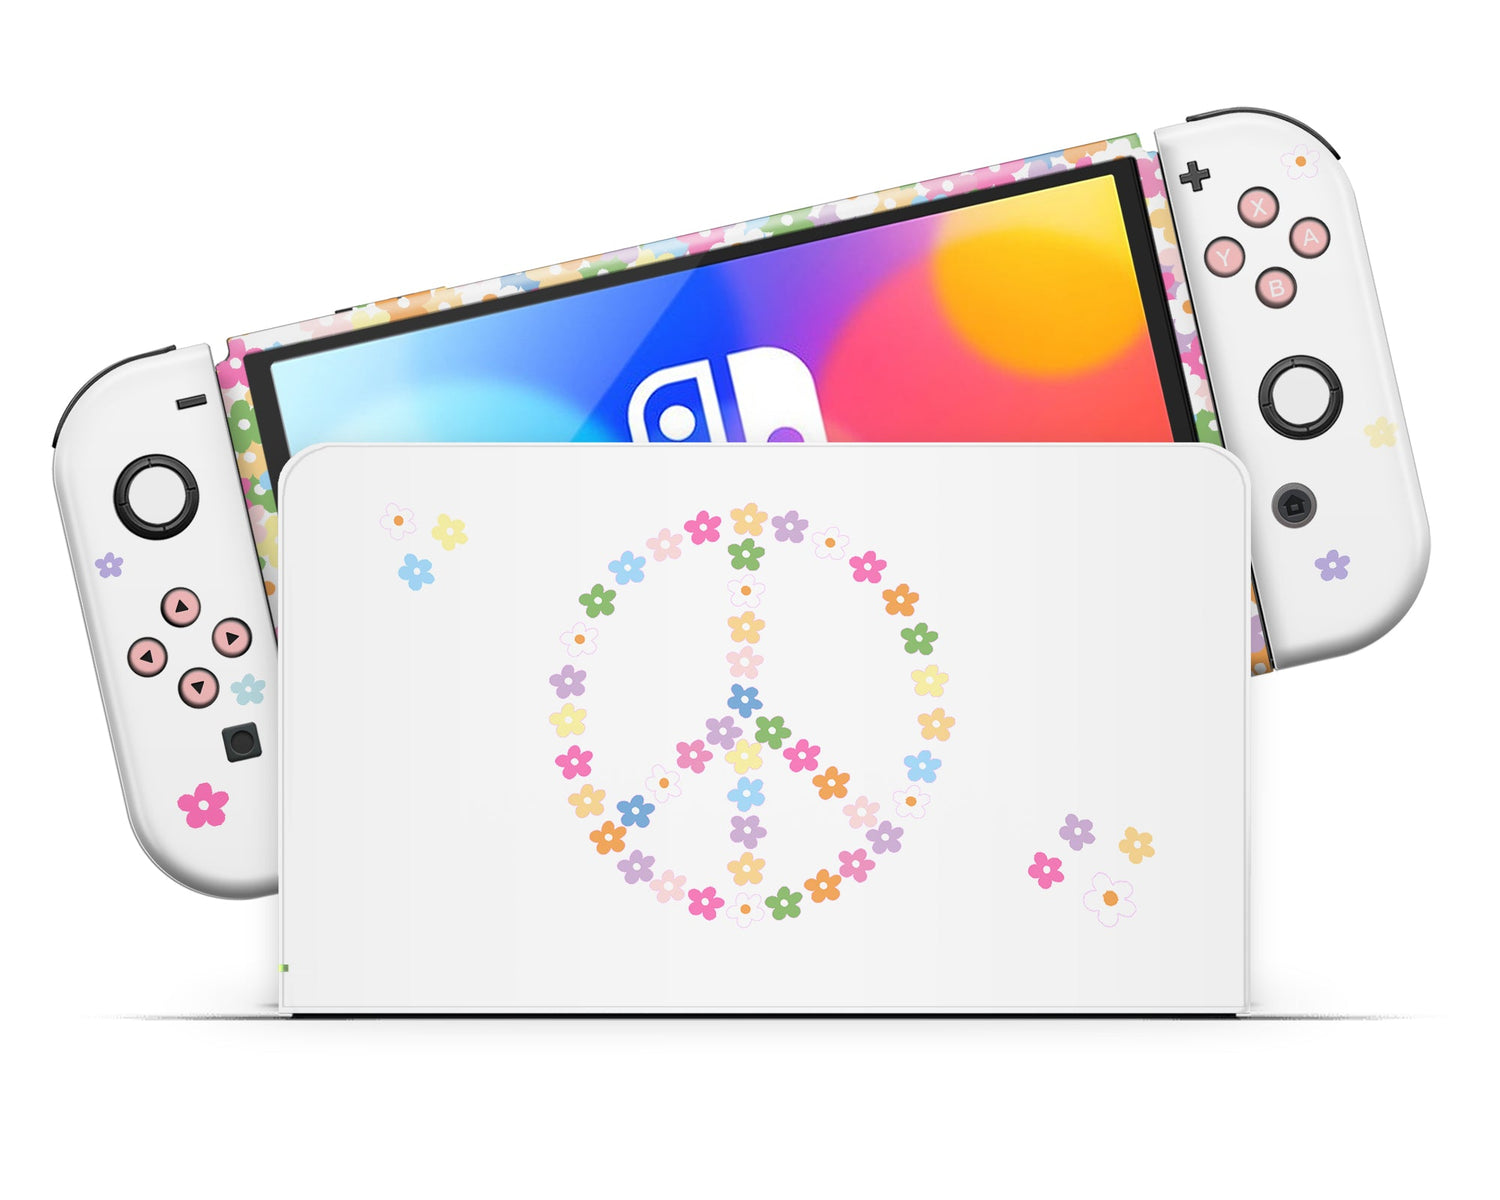 Lux Skins Nintendo Switch OLED Floral Peace Sign Full Set Skins - Art Floral Skin